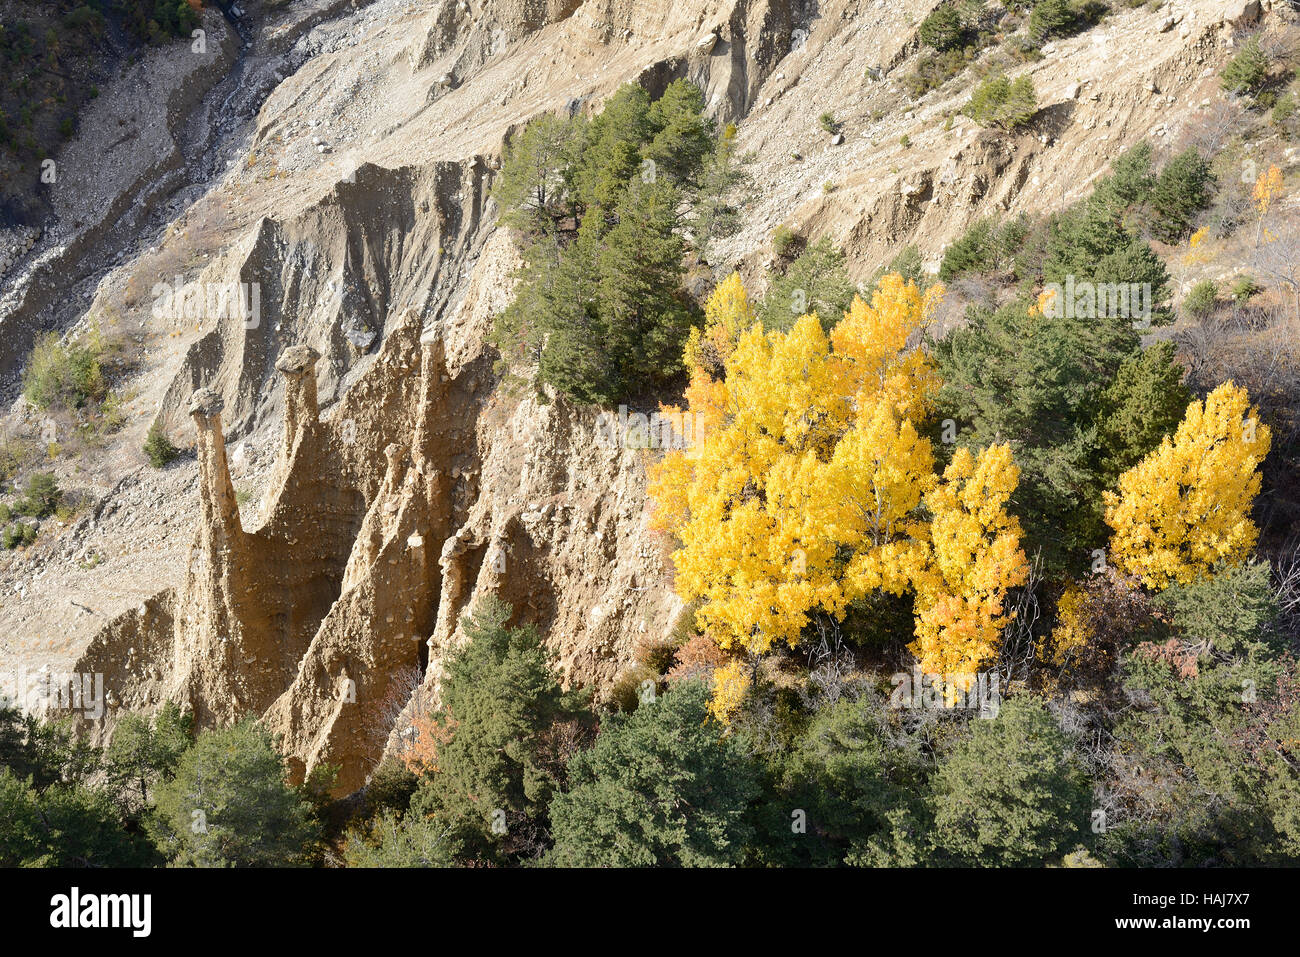 LUFTAUFNAHME. Hoodoos mit Kappenfelsen und einige Bäume mit herbstlichen Farben. Péone, Alpes-Maritimes, Frankreich. Stockfoto